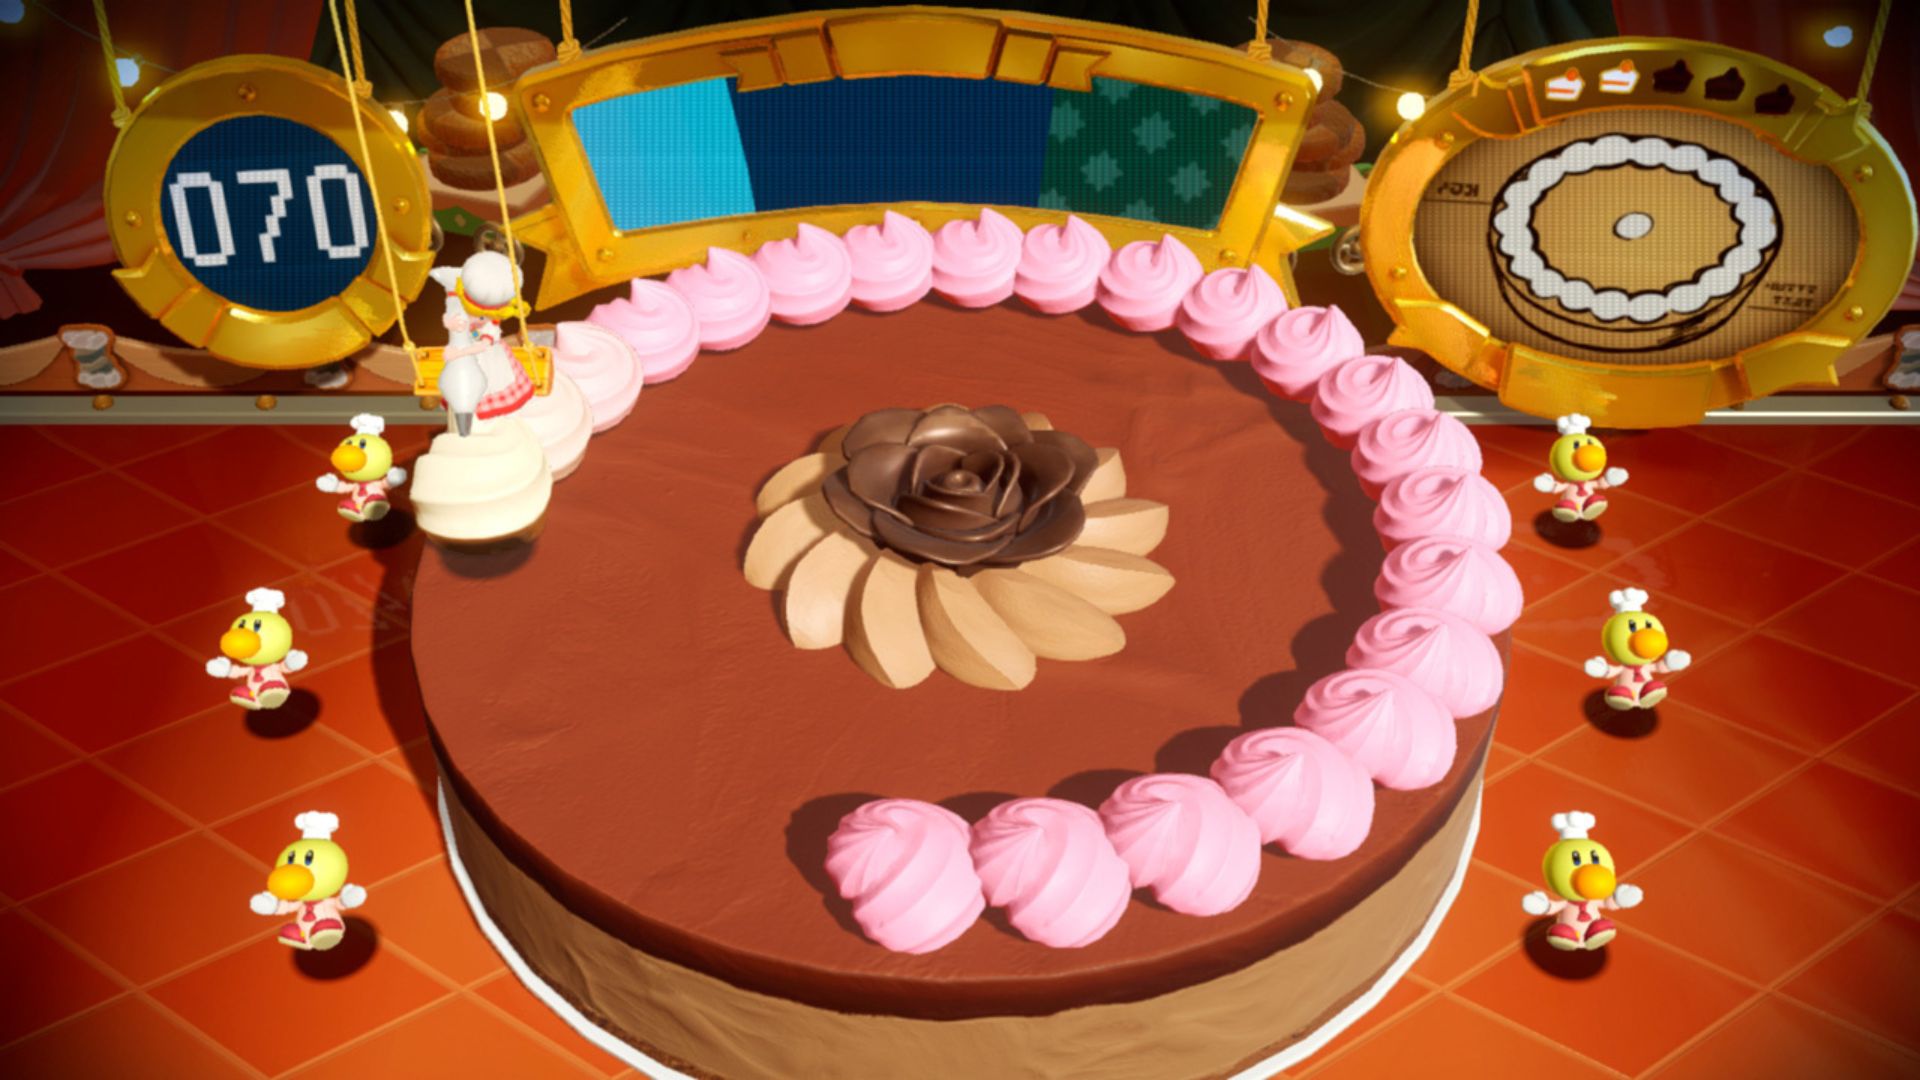 Персиковая глазурь на торте в Princess Peach Showtime